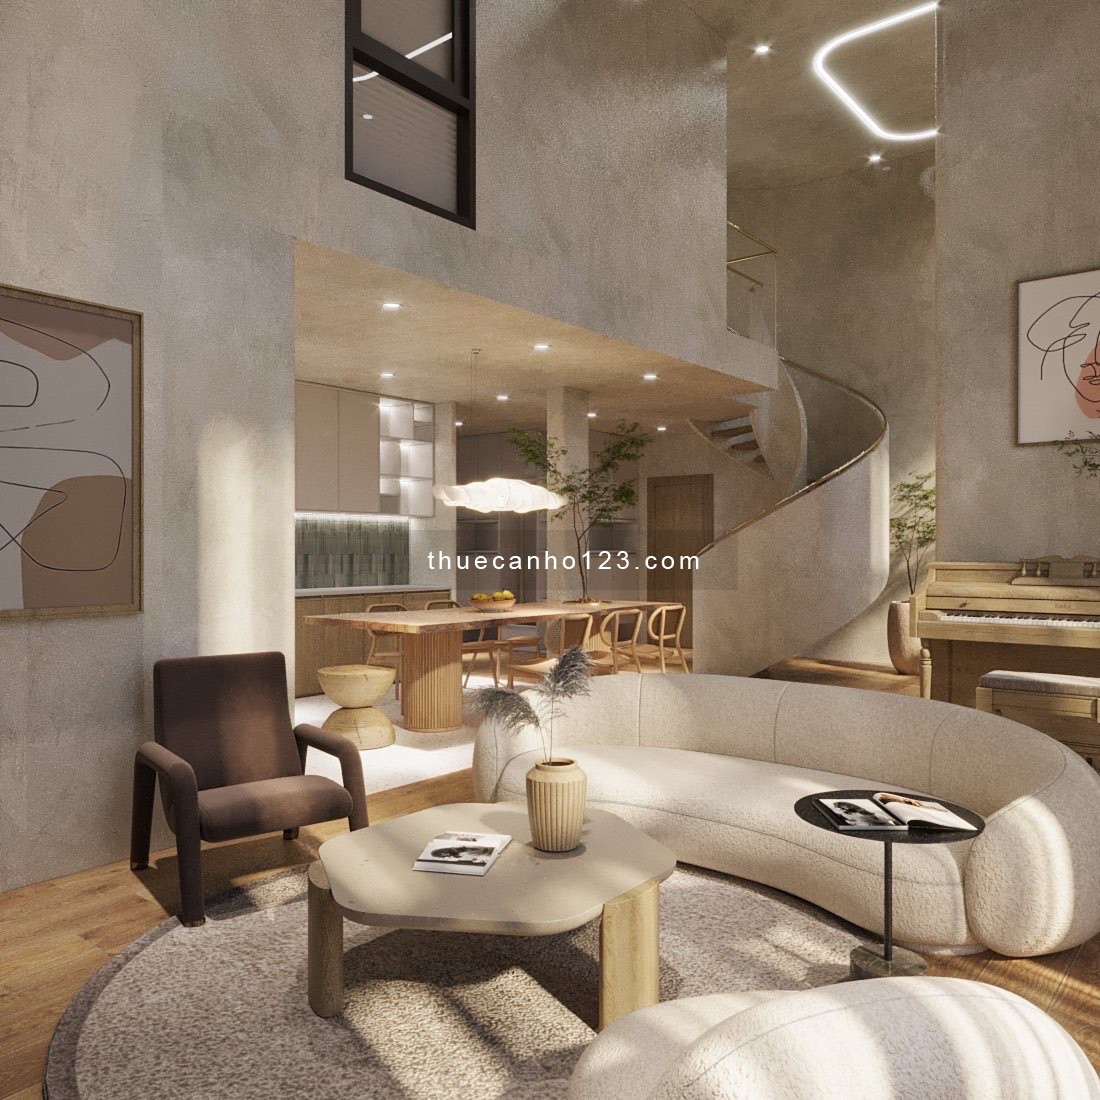 The Metropole: Cho thuê Penthouse 3PN duy nhất trên thị trường, nội thất thiết kế riêng - ONLY 4,000